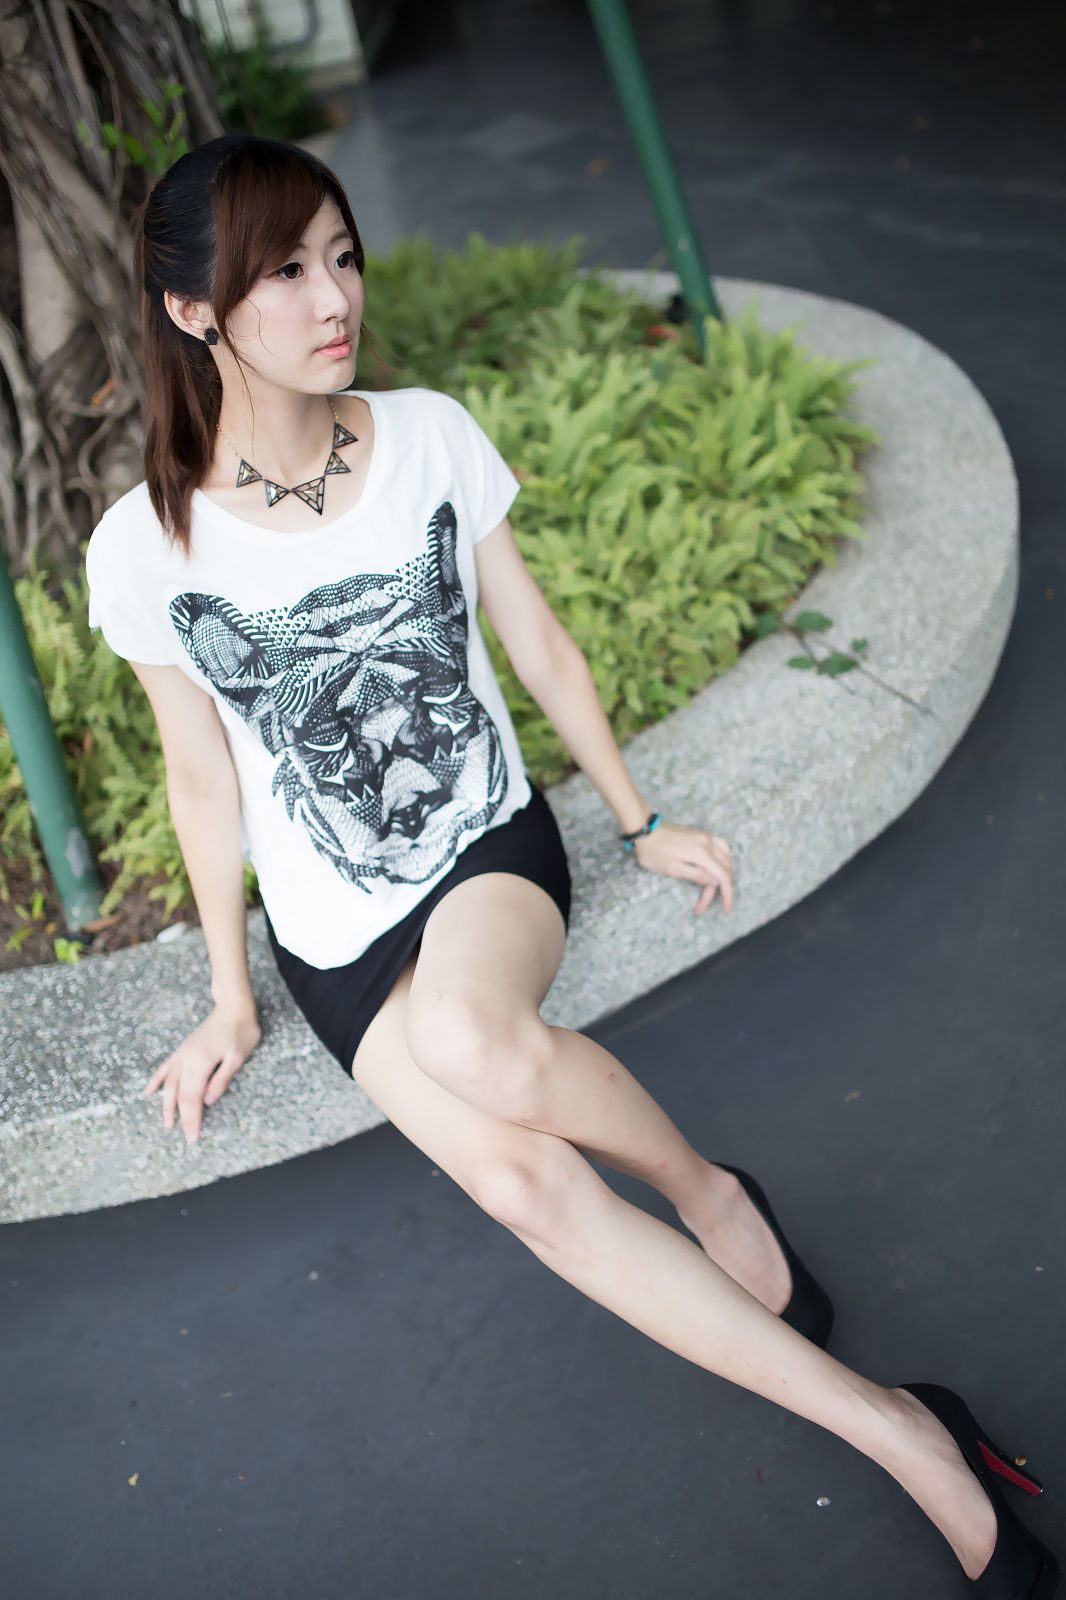 Das taiwanesische Model Queena / Maaki Hayashi << Park außerhalb Beat >> Seite 38 No.026a89